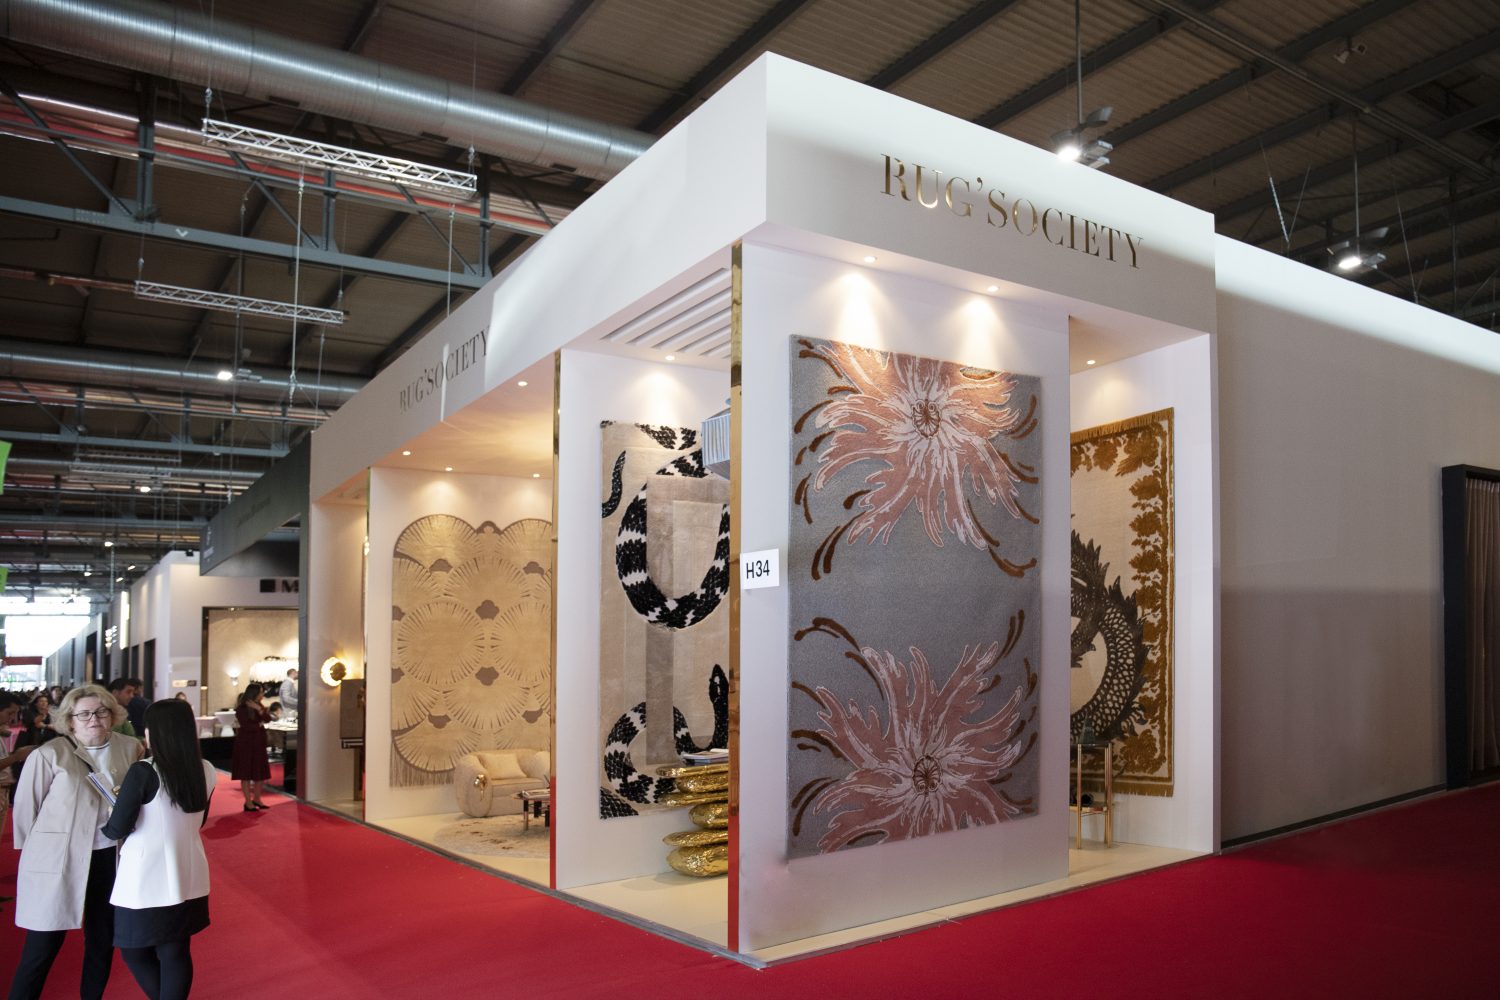 rug'society at Salone del Mobile 2019